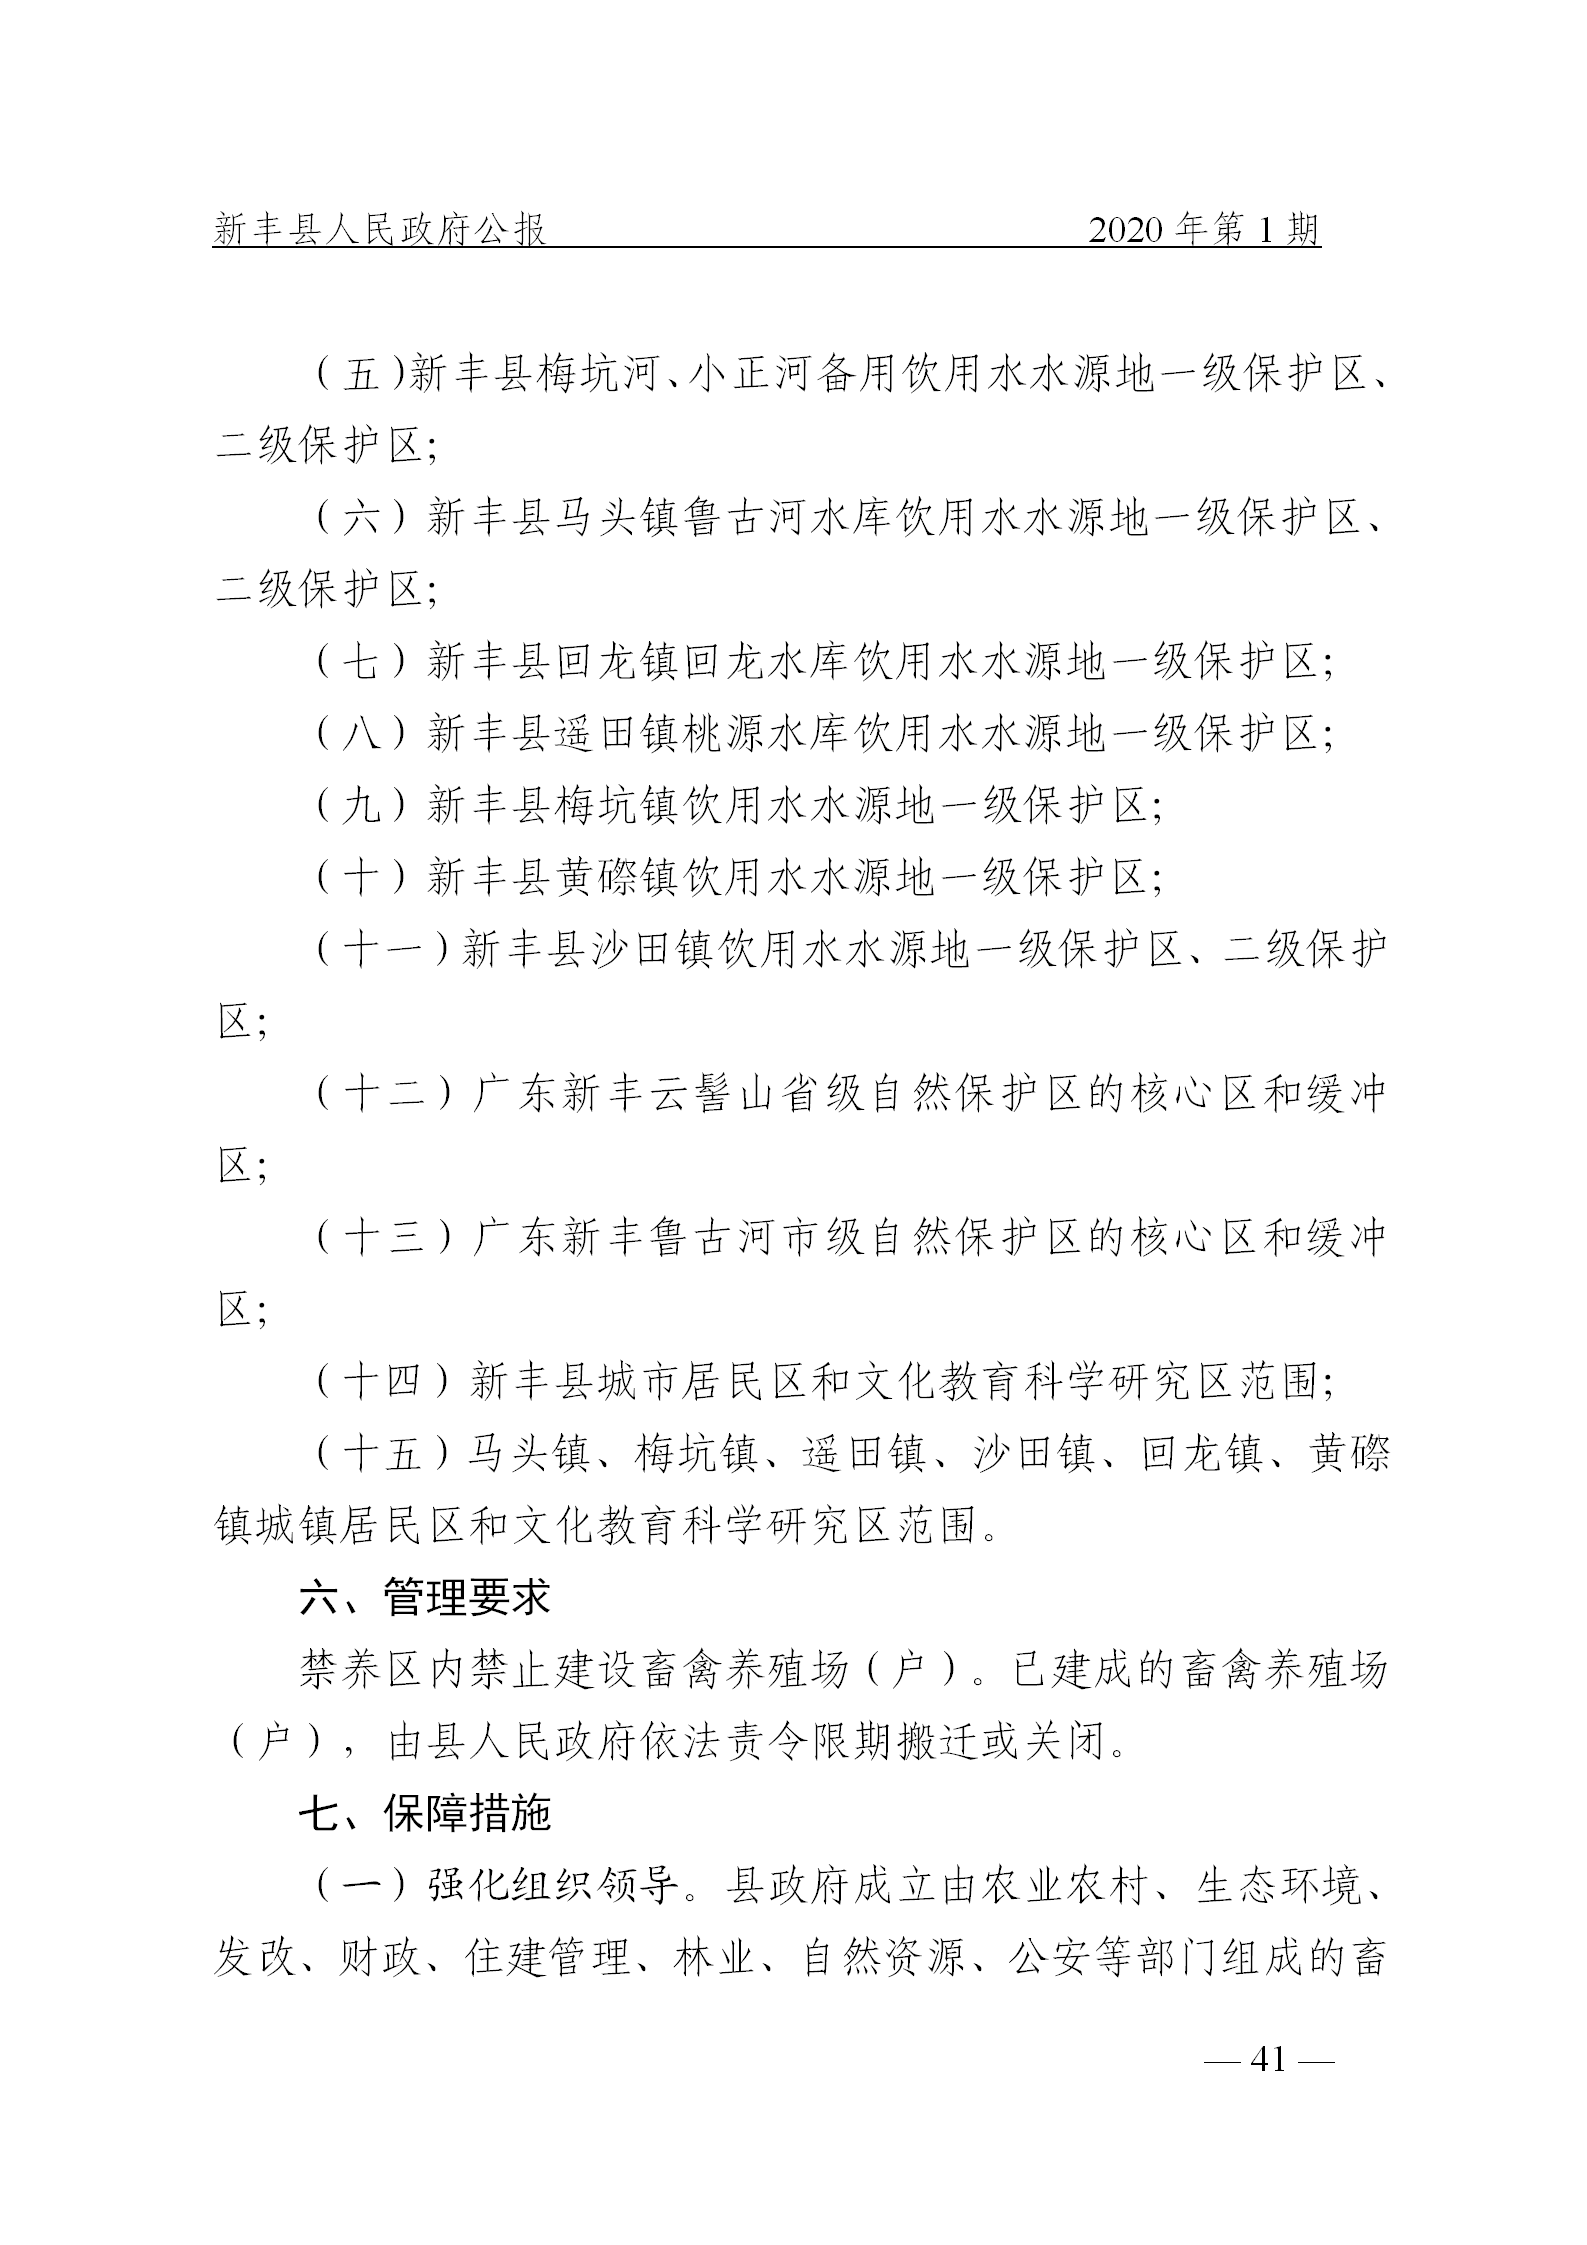 《新丰县人民政府公报》2020年第1期(1)_41.png